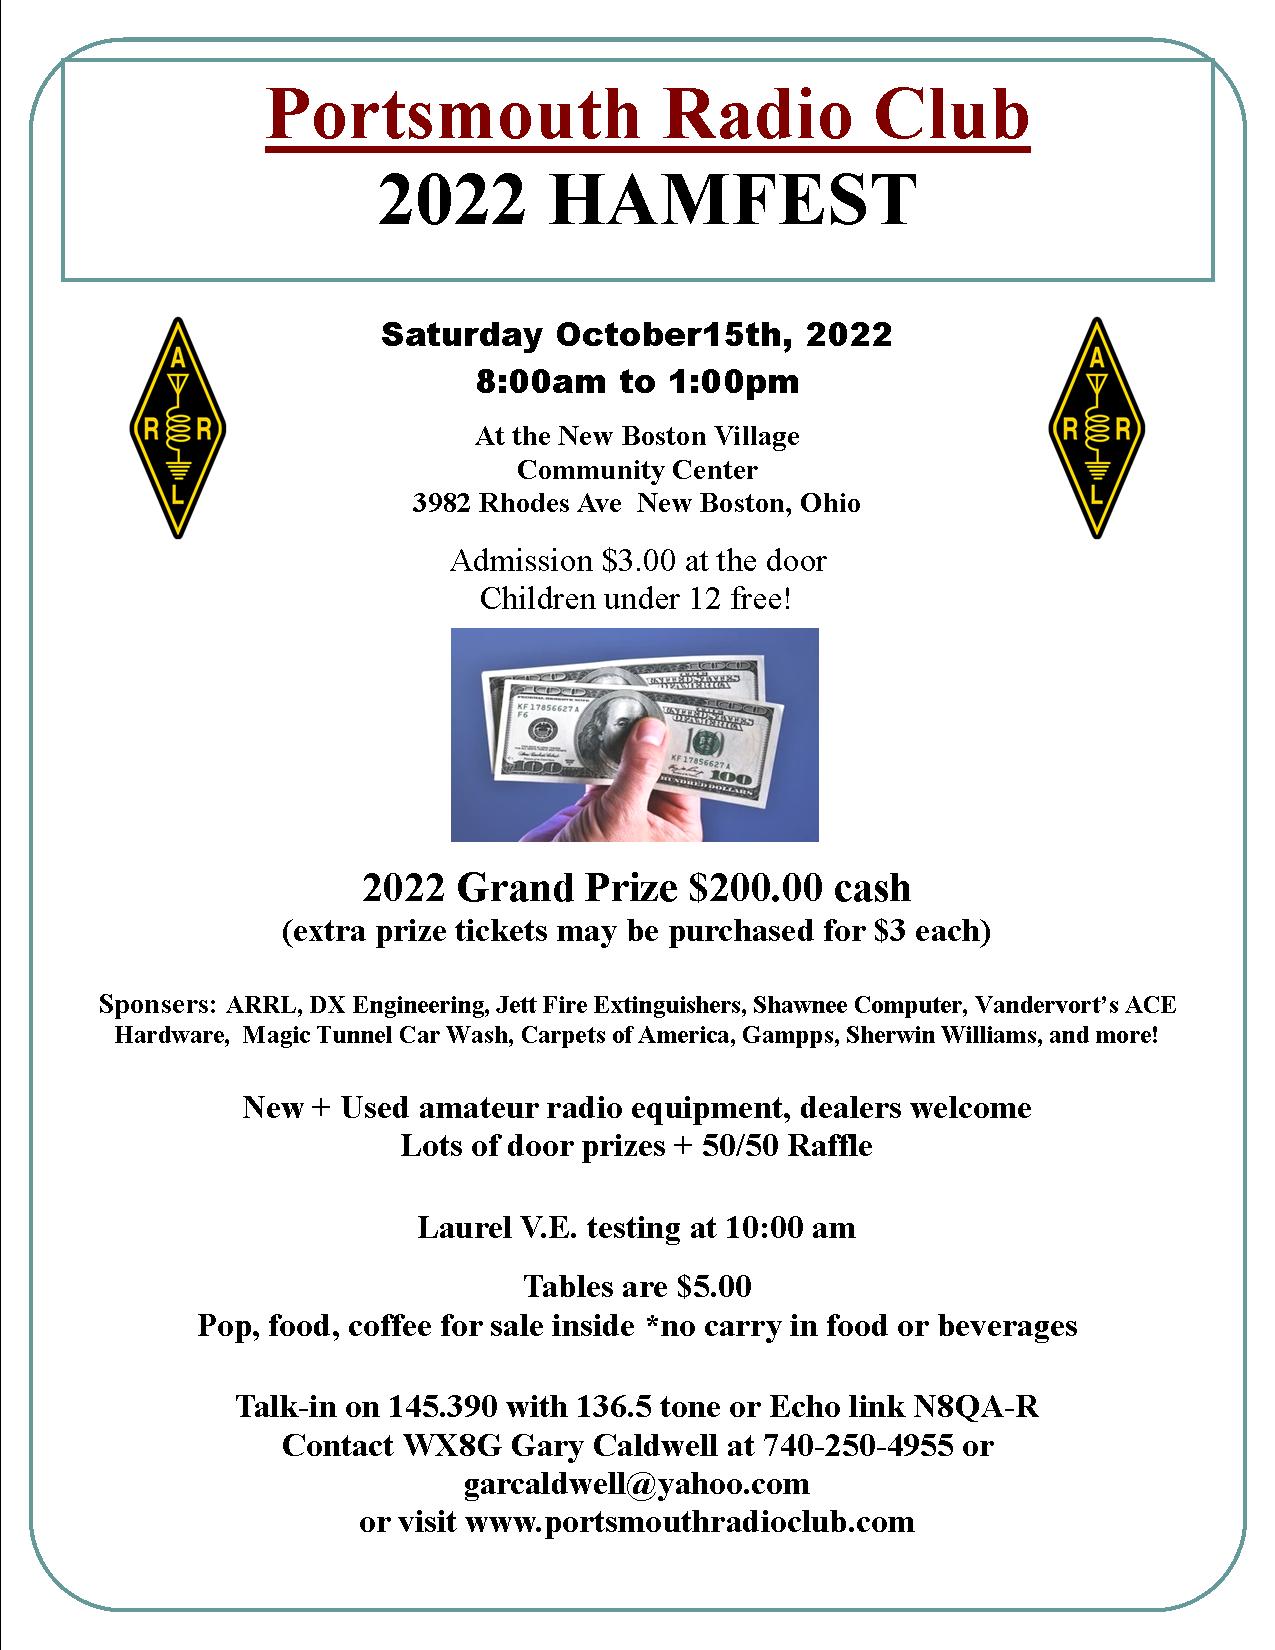 PRC Hamfest Flyer for 2022